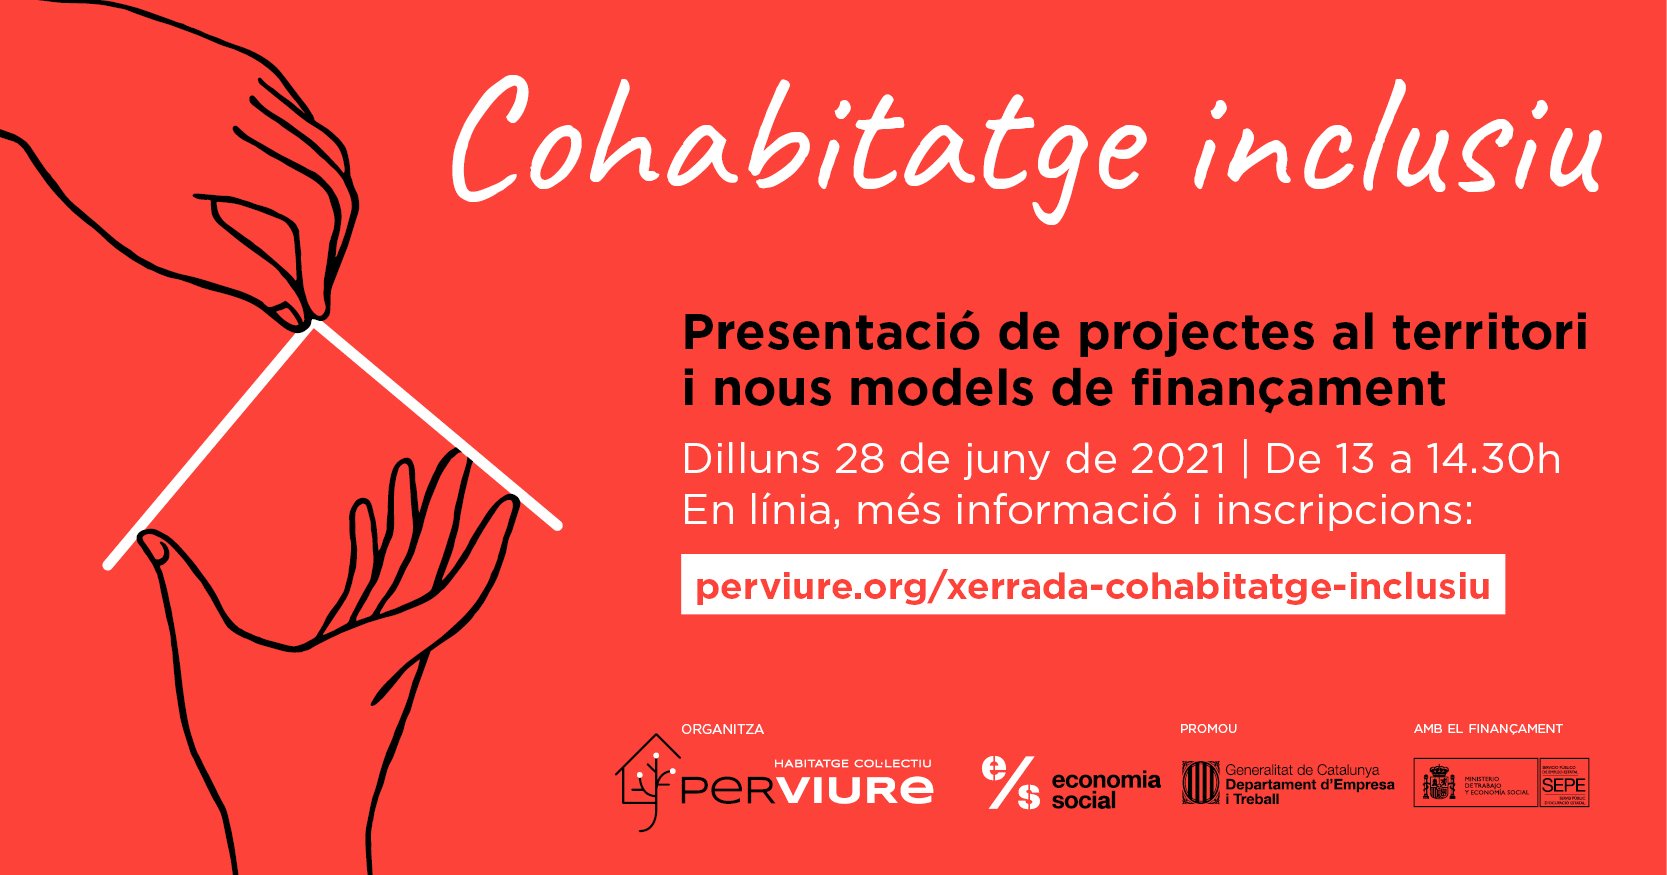 Presentació | Cohabitatge inclusiu: presentació de projectes al territori i nous models de finançament